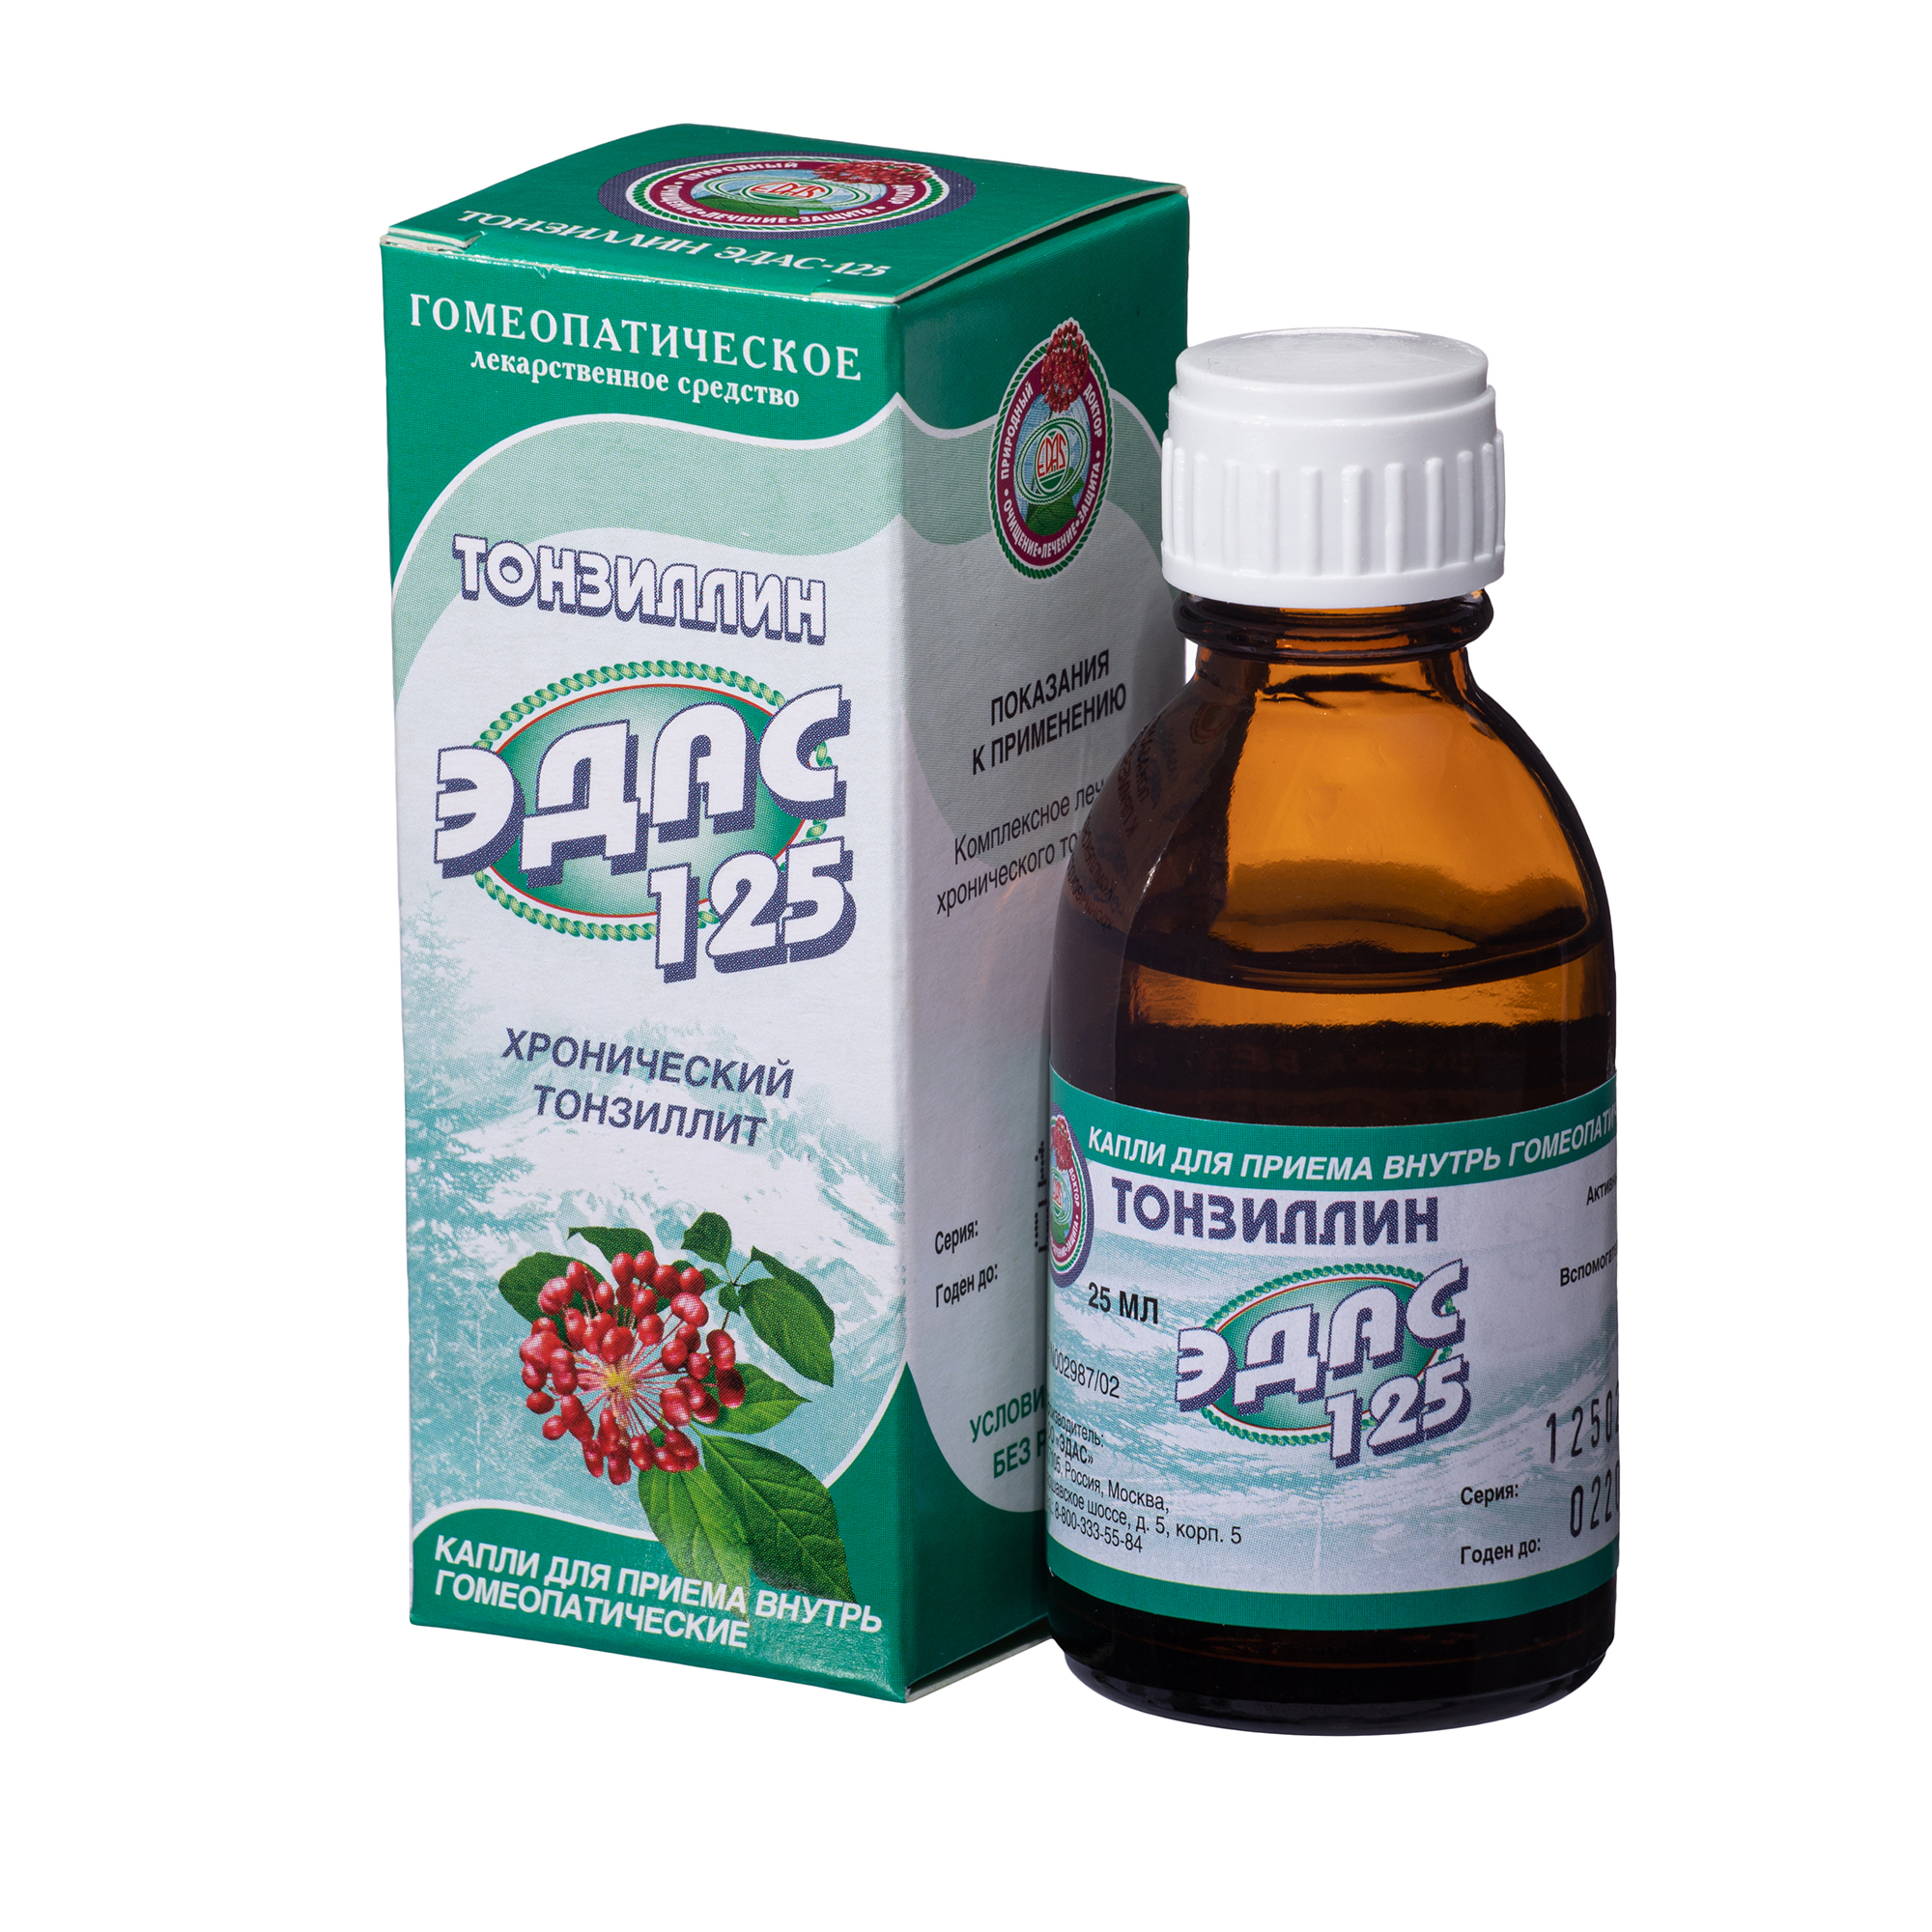 Тонзиллин Эдас-125, для лечения хронического тонзиллита, капли гом. 25 мл эдас 131 капли фл капел 15мл 1